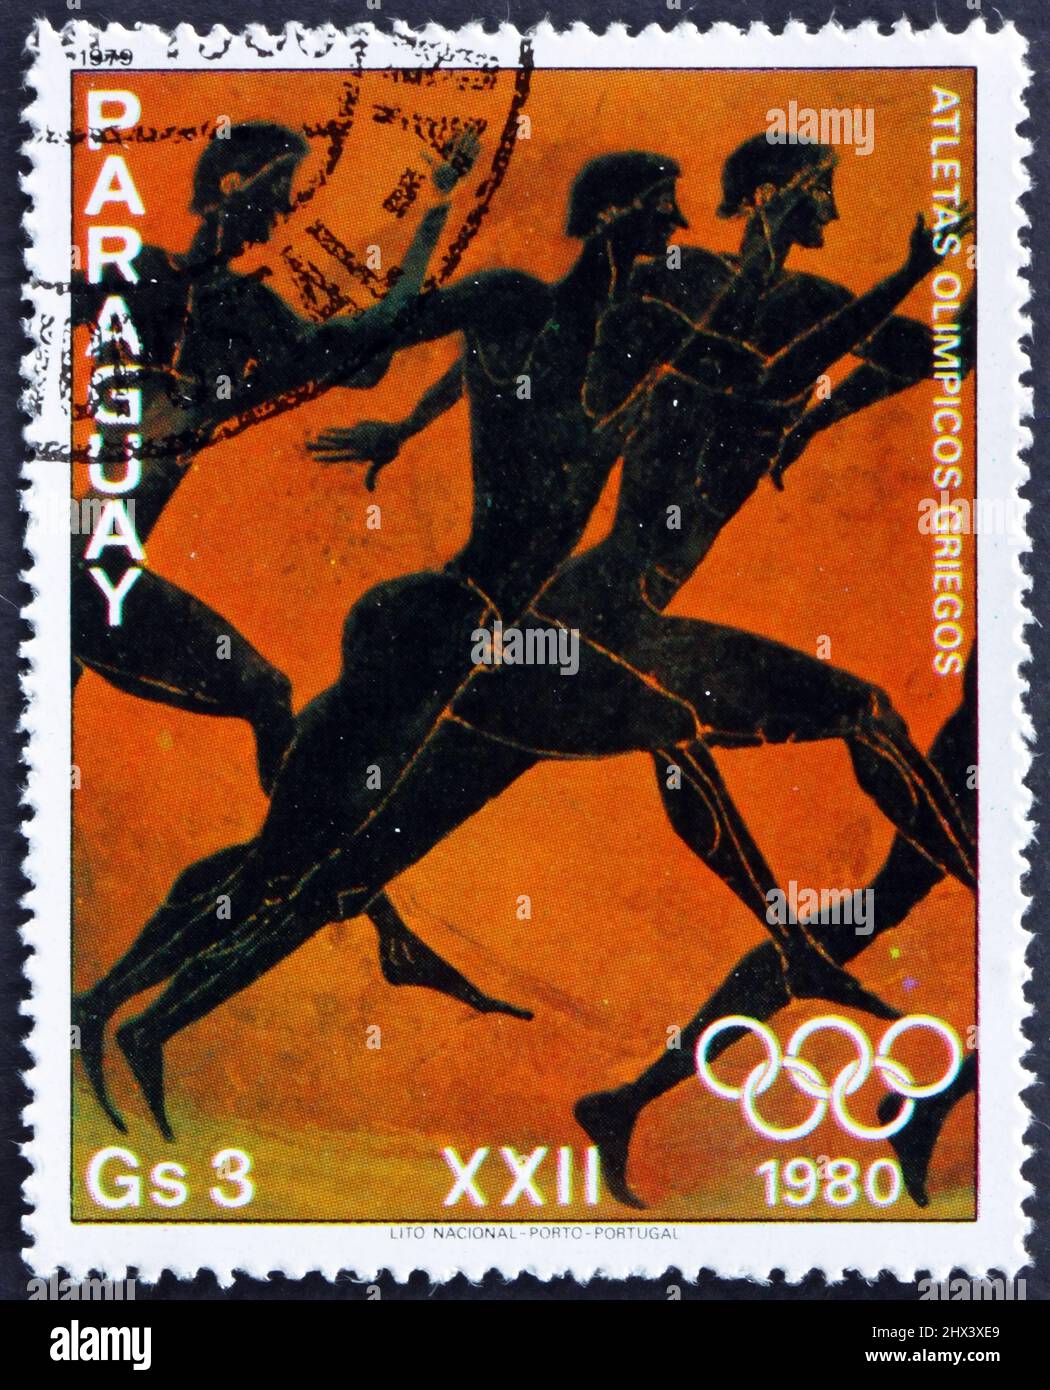 PARAGUAY - VERS 1979: Un timbre imprimé au Paraguay montre trois coureurs, des athlètes grecs, peinture sur vase grec, vers 1979 Banque D'Images